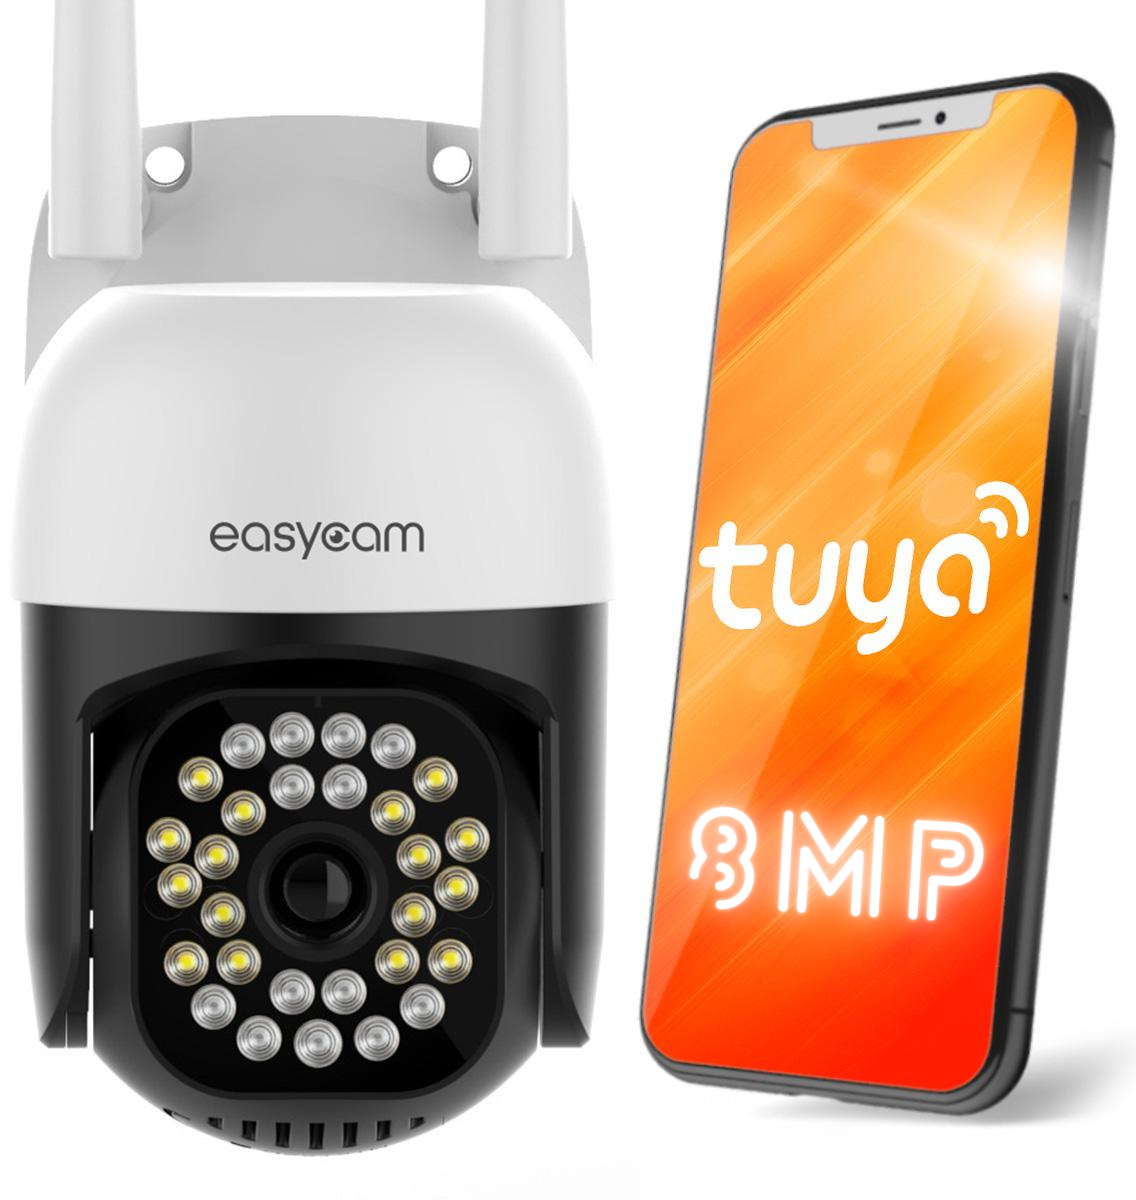 Obrotowa zewnętrzna kamera IP EasyCam Wi-Fi 8MPx - najważniejsze cechy: